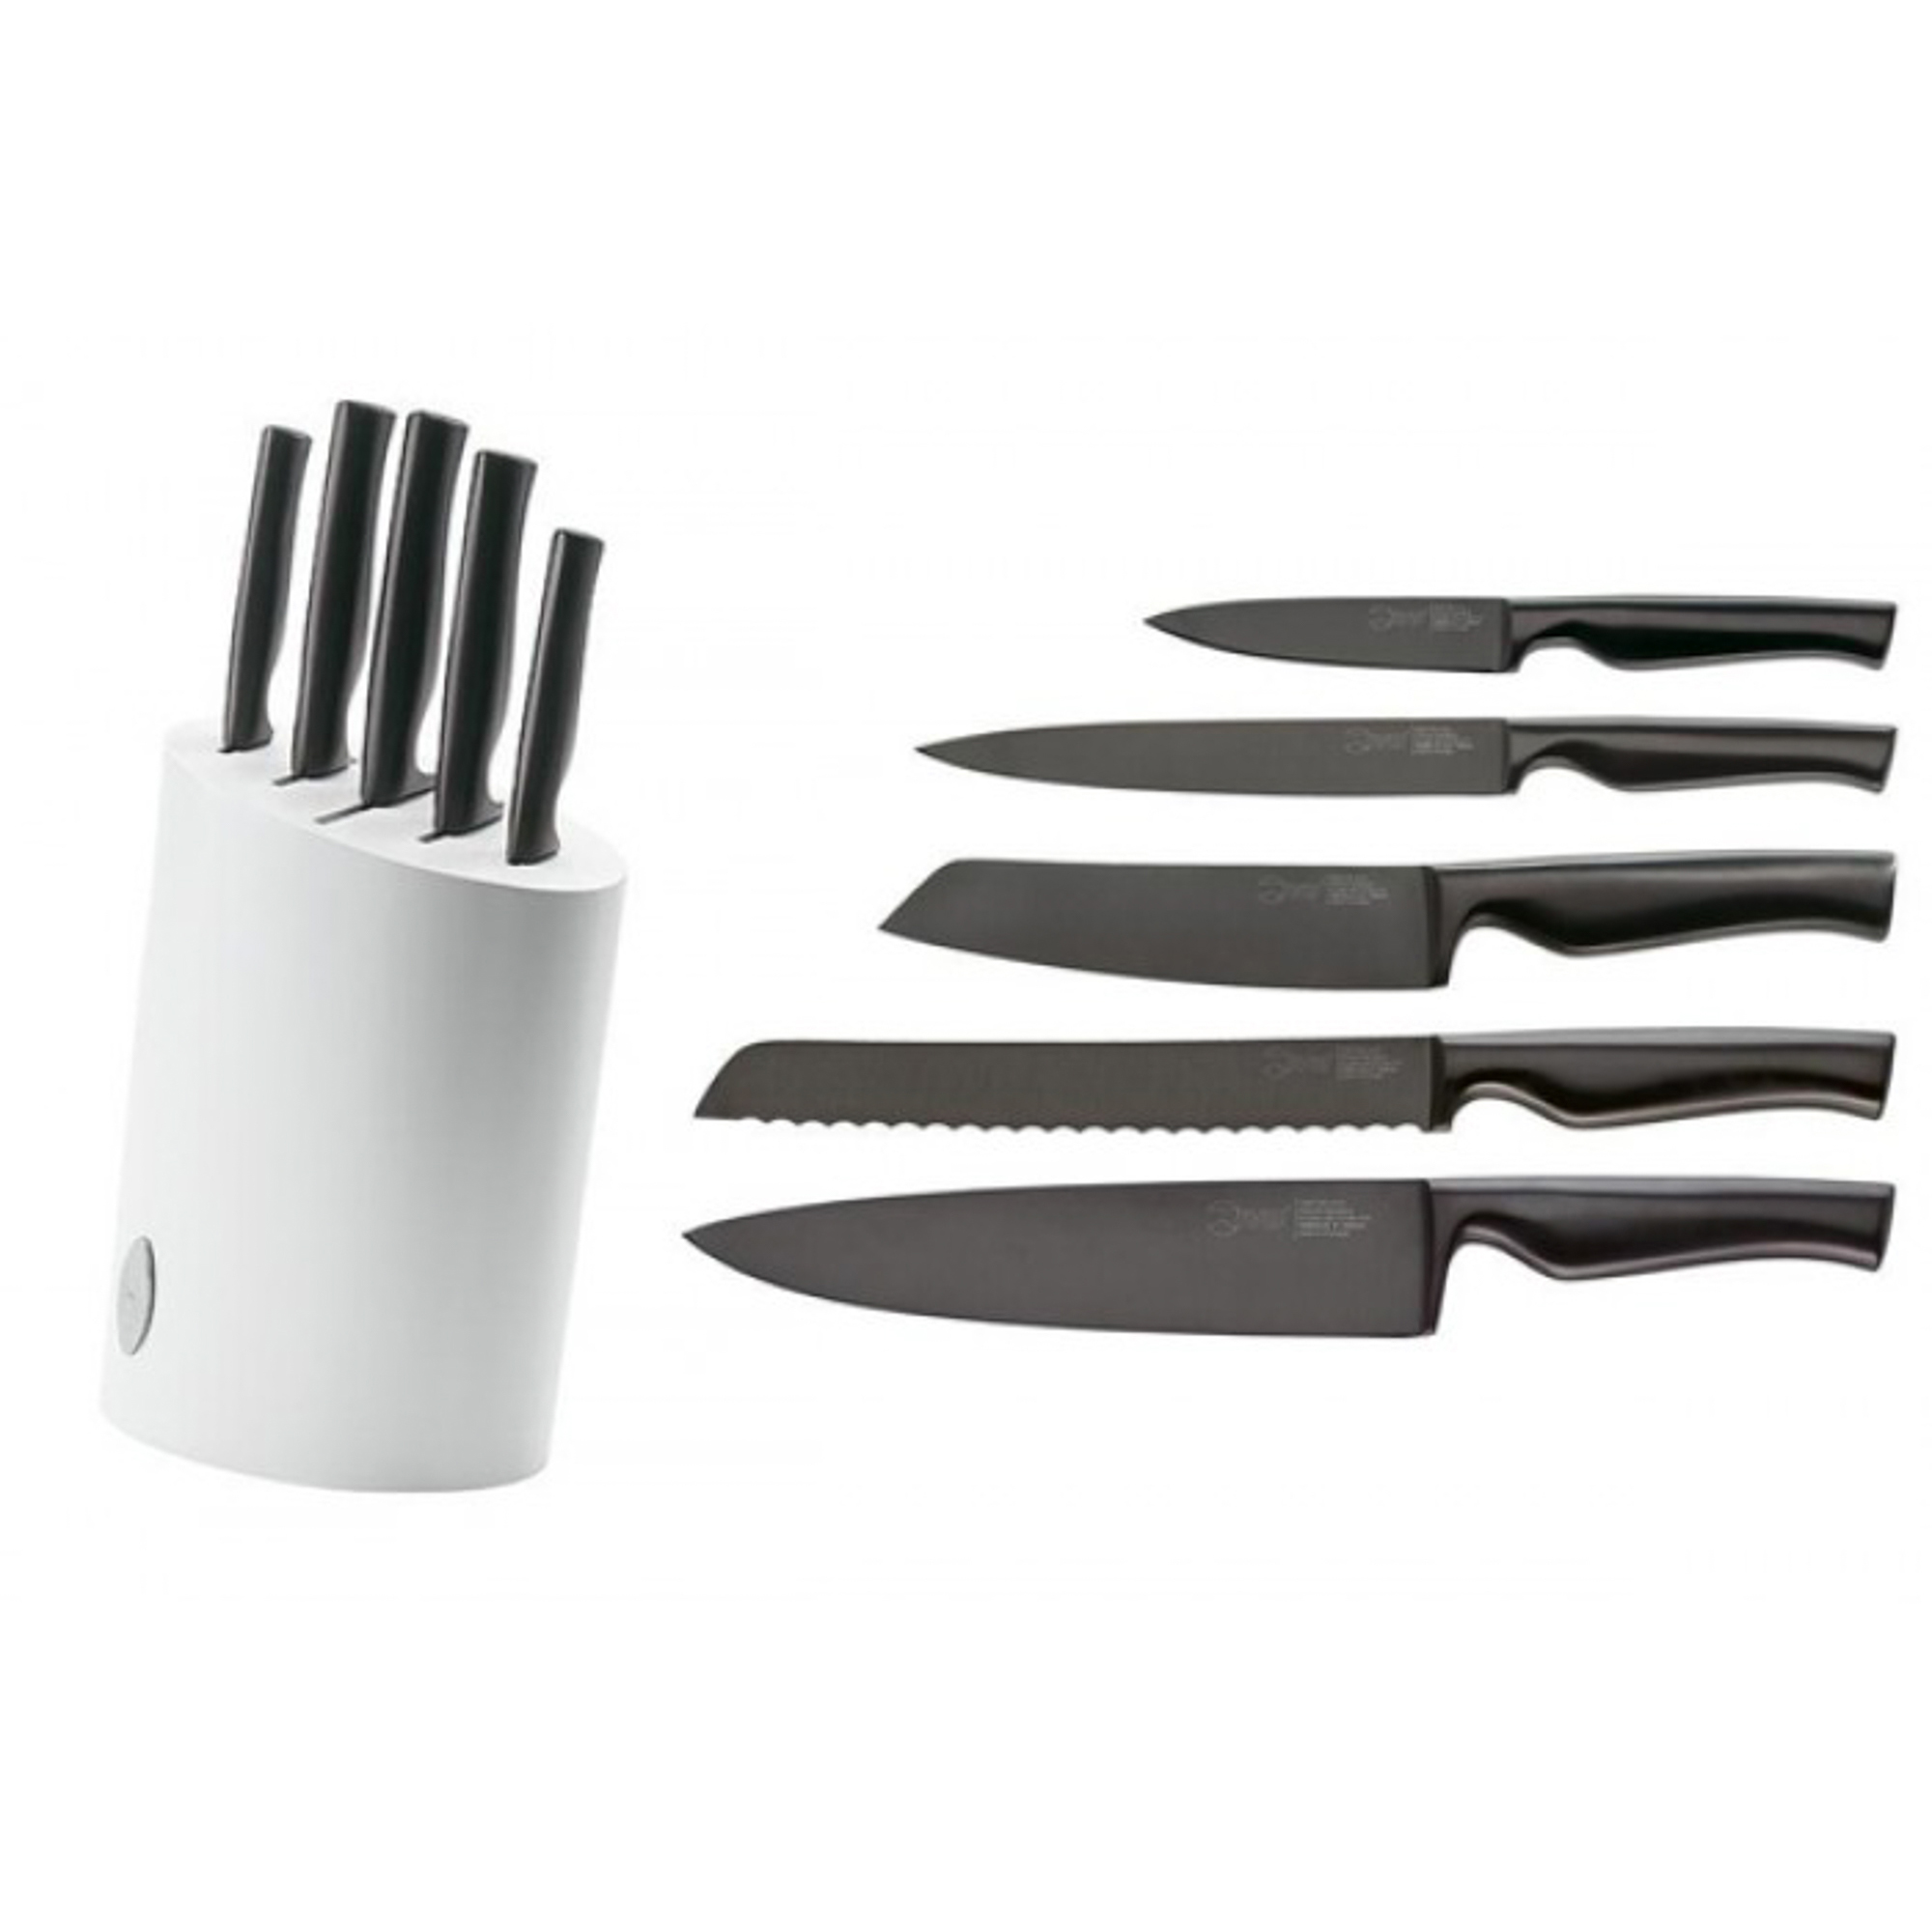 Набор ножей 6 предметов Ivo Virtu black (109244) набор ножей 6 предметов ivo virtu black 109244